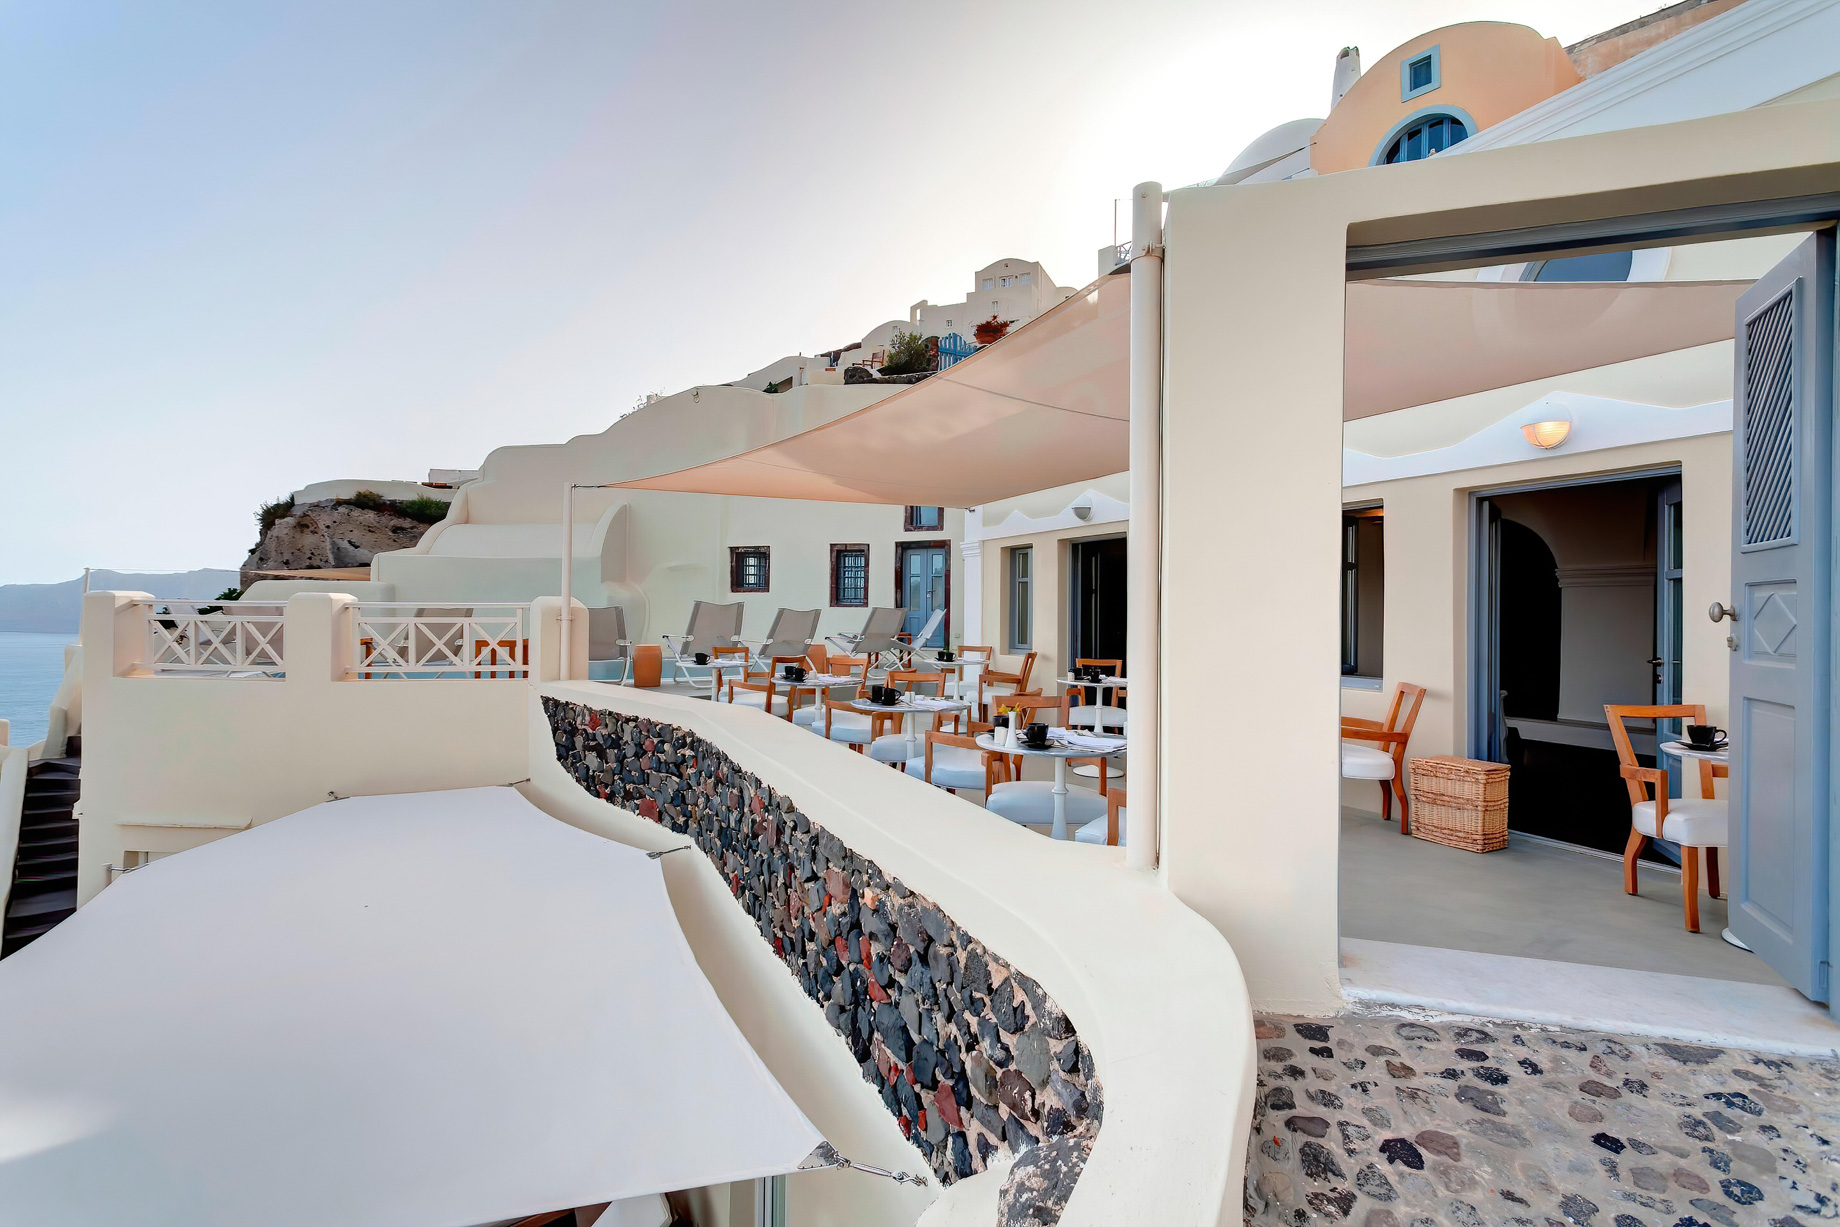 Mystique Hotel Santorini – Oia, Santorini Island, Greece – Captain’s Lounge Entrance